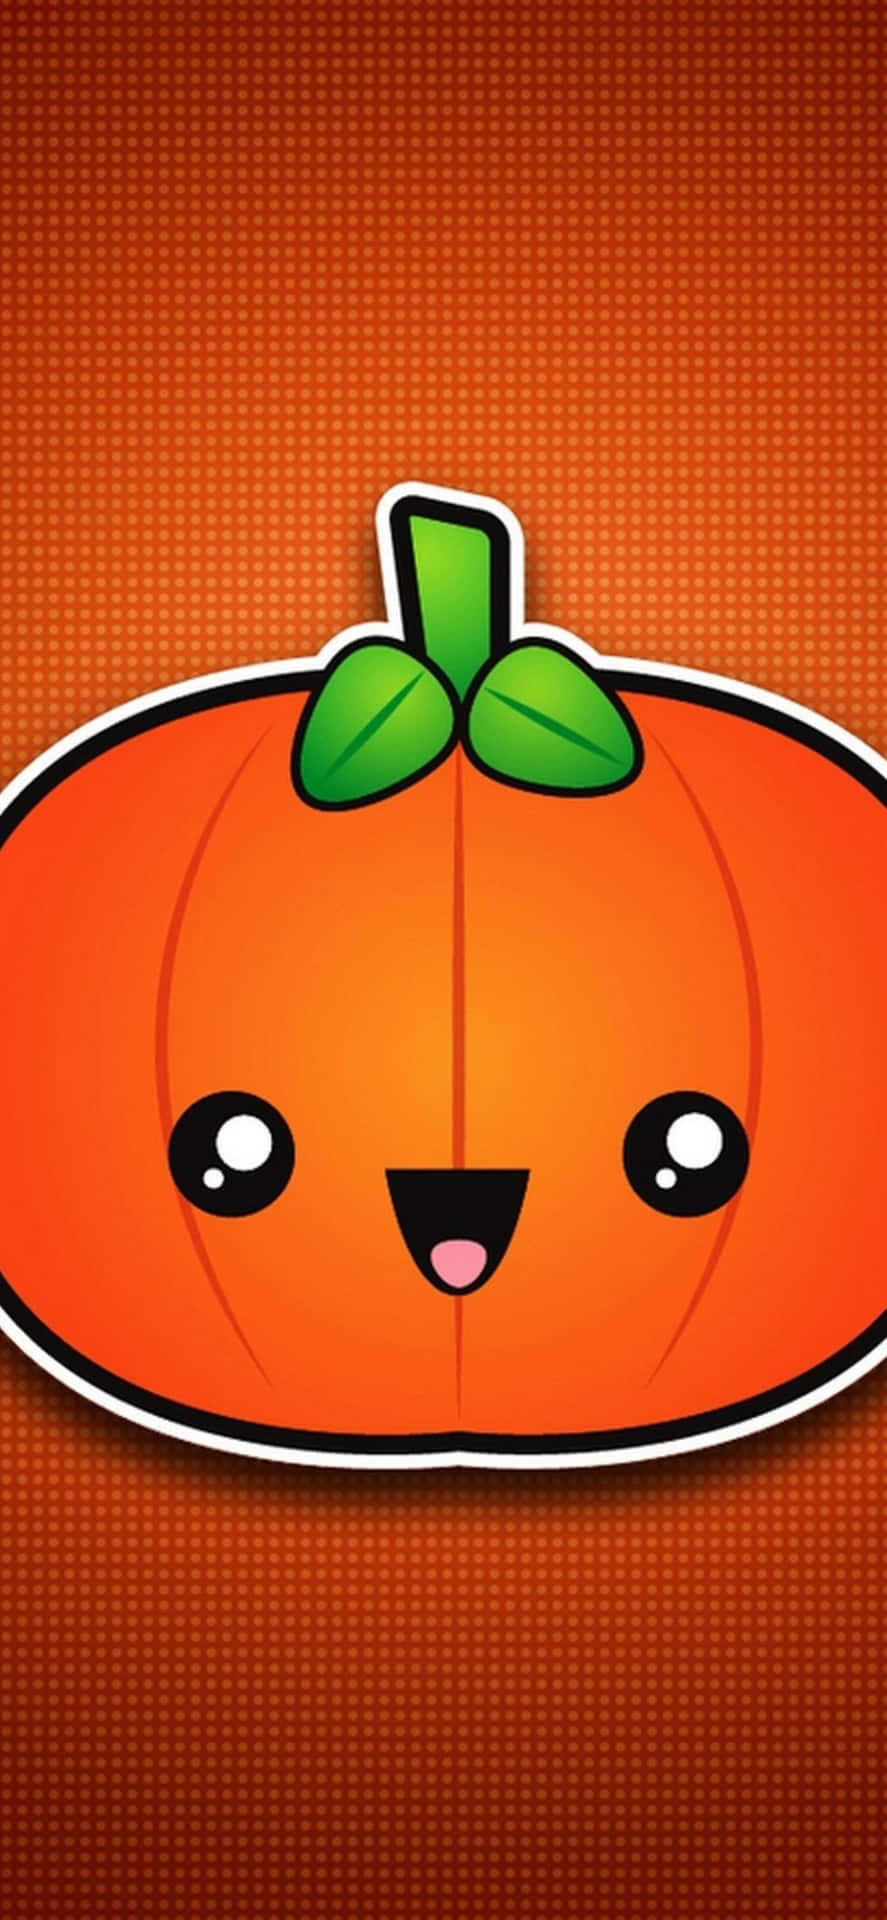 Komi Halloweens Stämning Med Denna Festliga Iphone- Bakgrundsbild